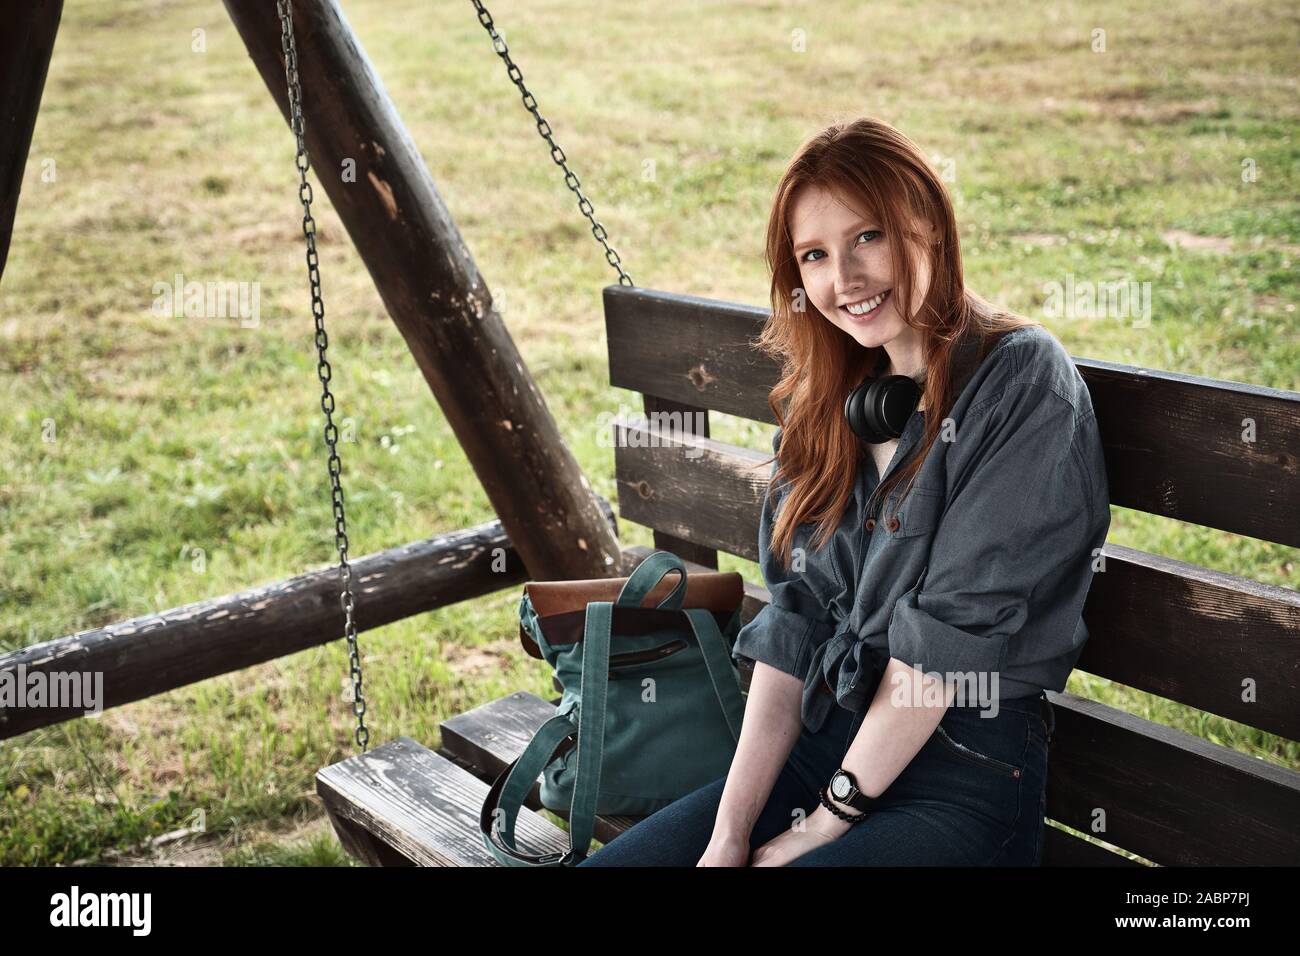 Redhead girl dans une chemise en jean est assis avec un sac à dos sur une balançoire en bois banc et sourit dans le cadre. Banque D'Images